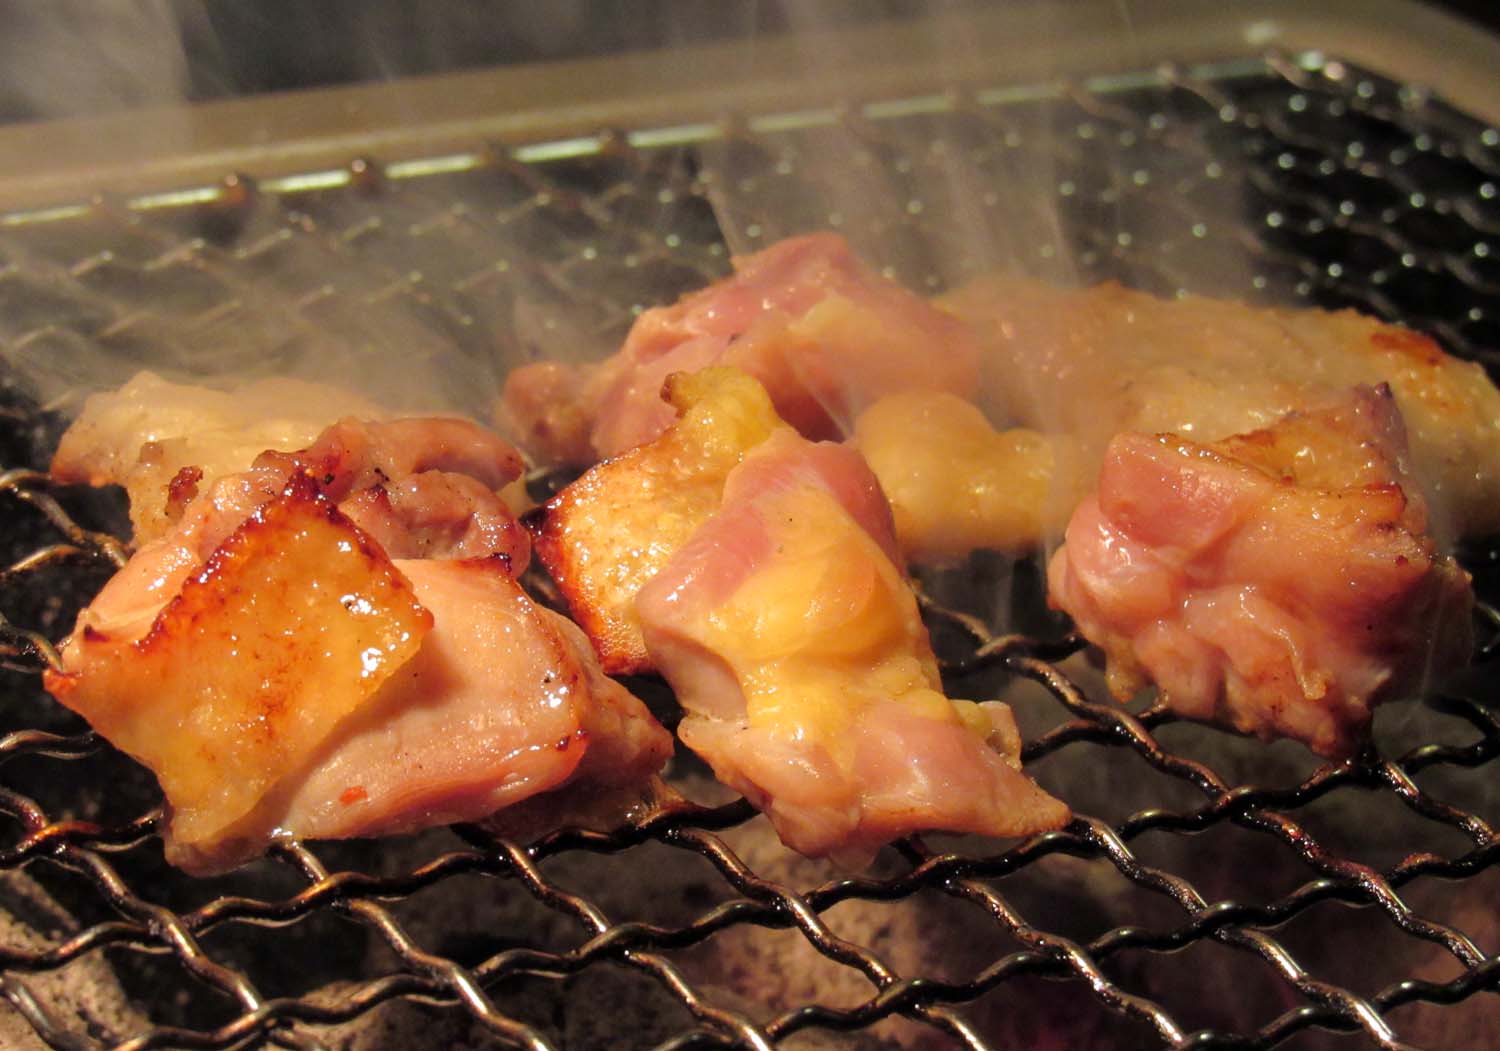 鶏処きじや 宮崎県都城市の鶏専門店